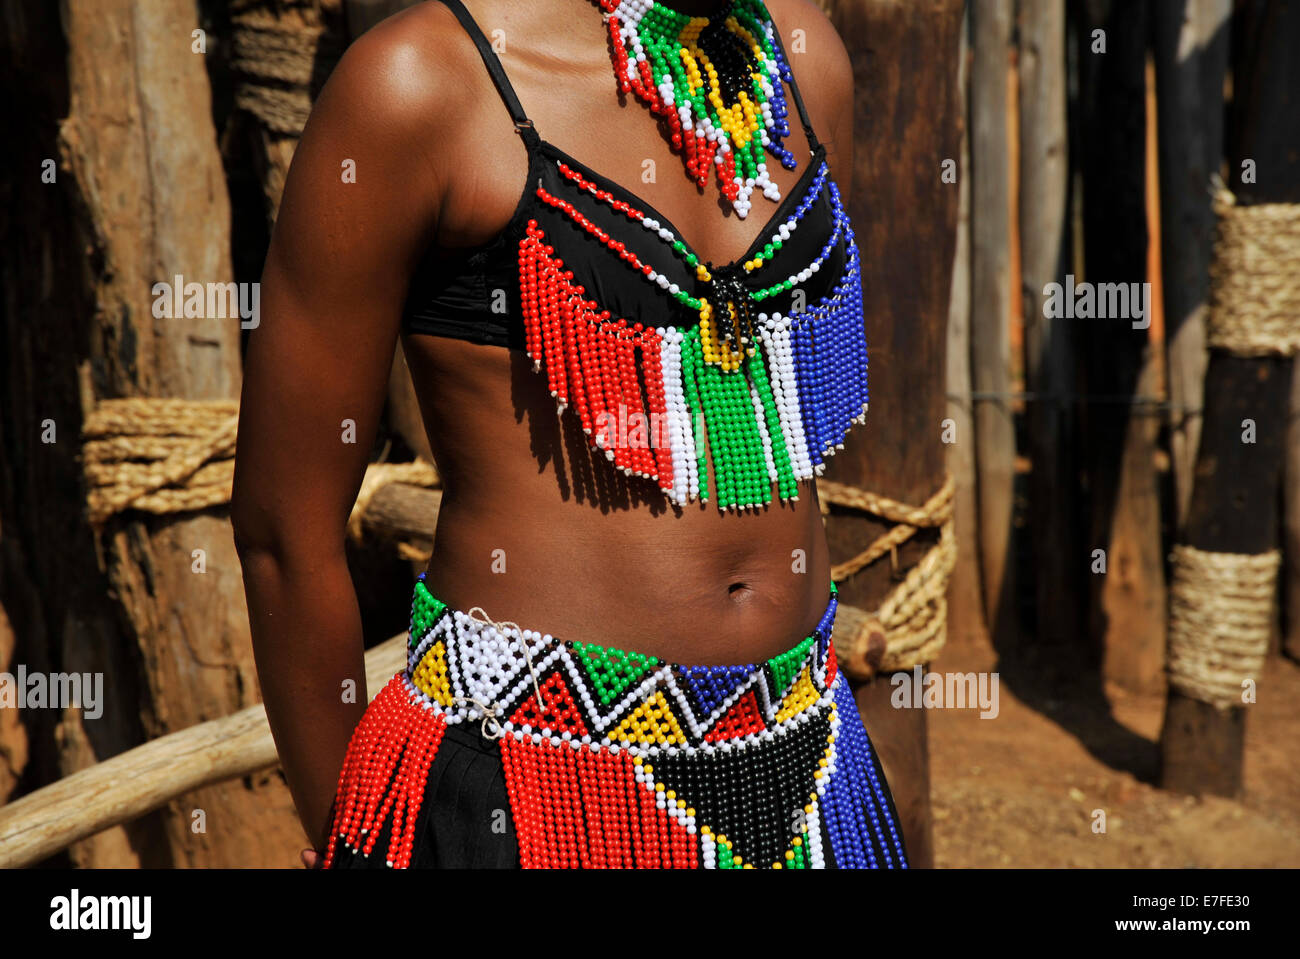 Personnes, culture, corps de la femme, KwaZulu-Natal, Afrique du Sud, Robe  traditionnelle colorée ornée de perles, jeune fille Zulu, village à thème  Shakaland, vêtements, ethnie Photo Stock - Alamy